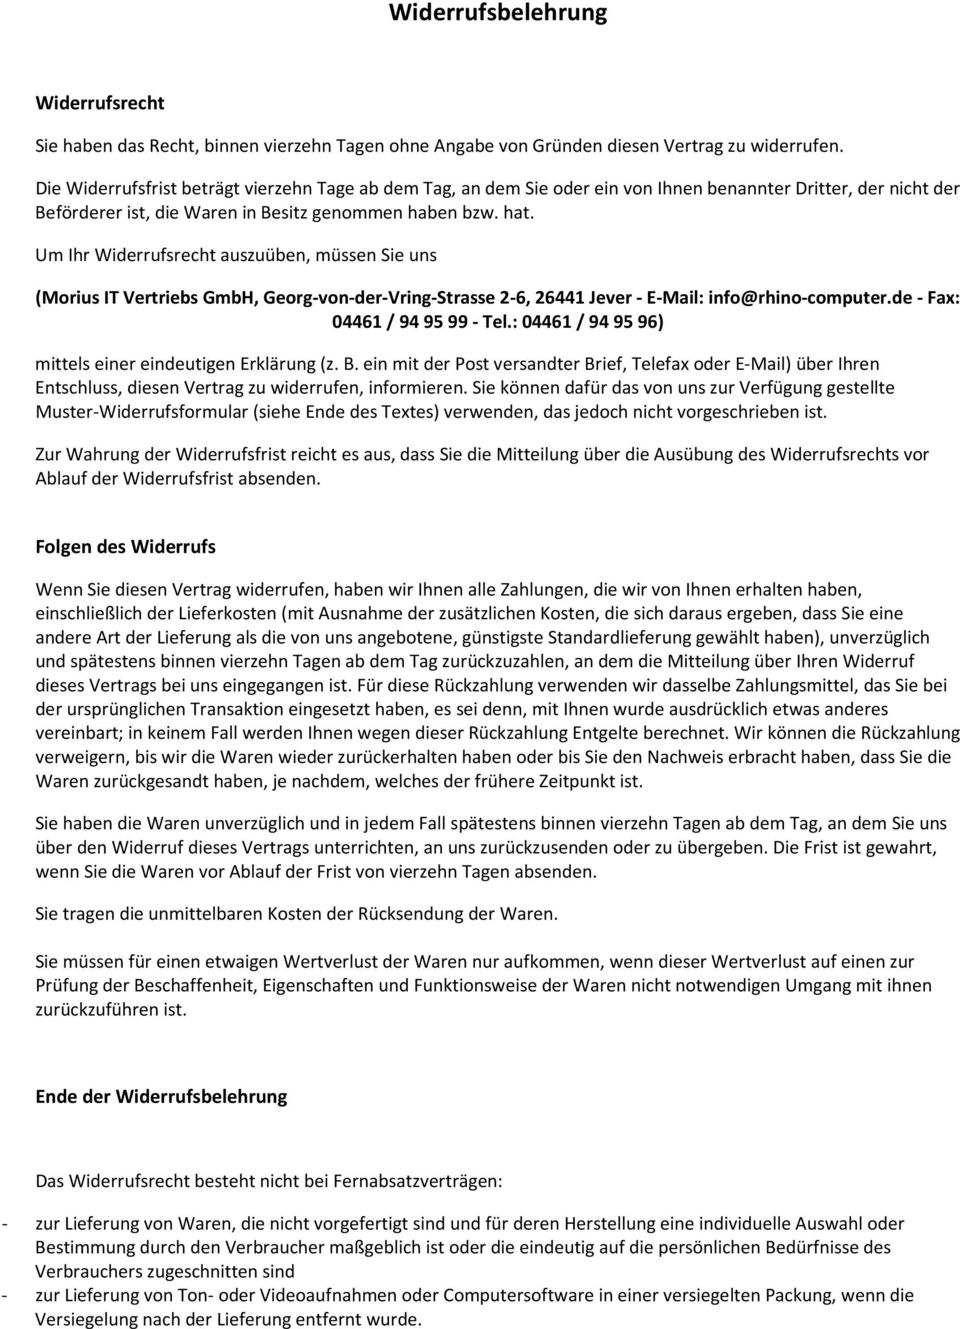 Um Ihr Widerrufsrecht auszuüben, müssen Sie uns (Morius IT Vertriebs GmbH, Georg-von-der-Vring-Strasse 2-6, 26441 Jever - E-Mail: info@rhino-computer.de - Fax: 04461 / 94 95 99 - Tel.